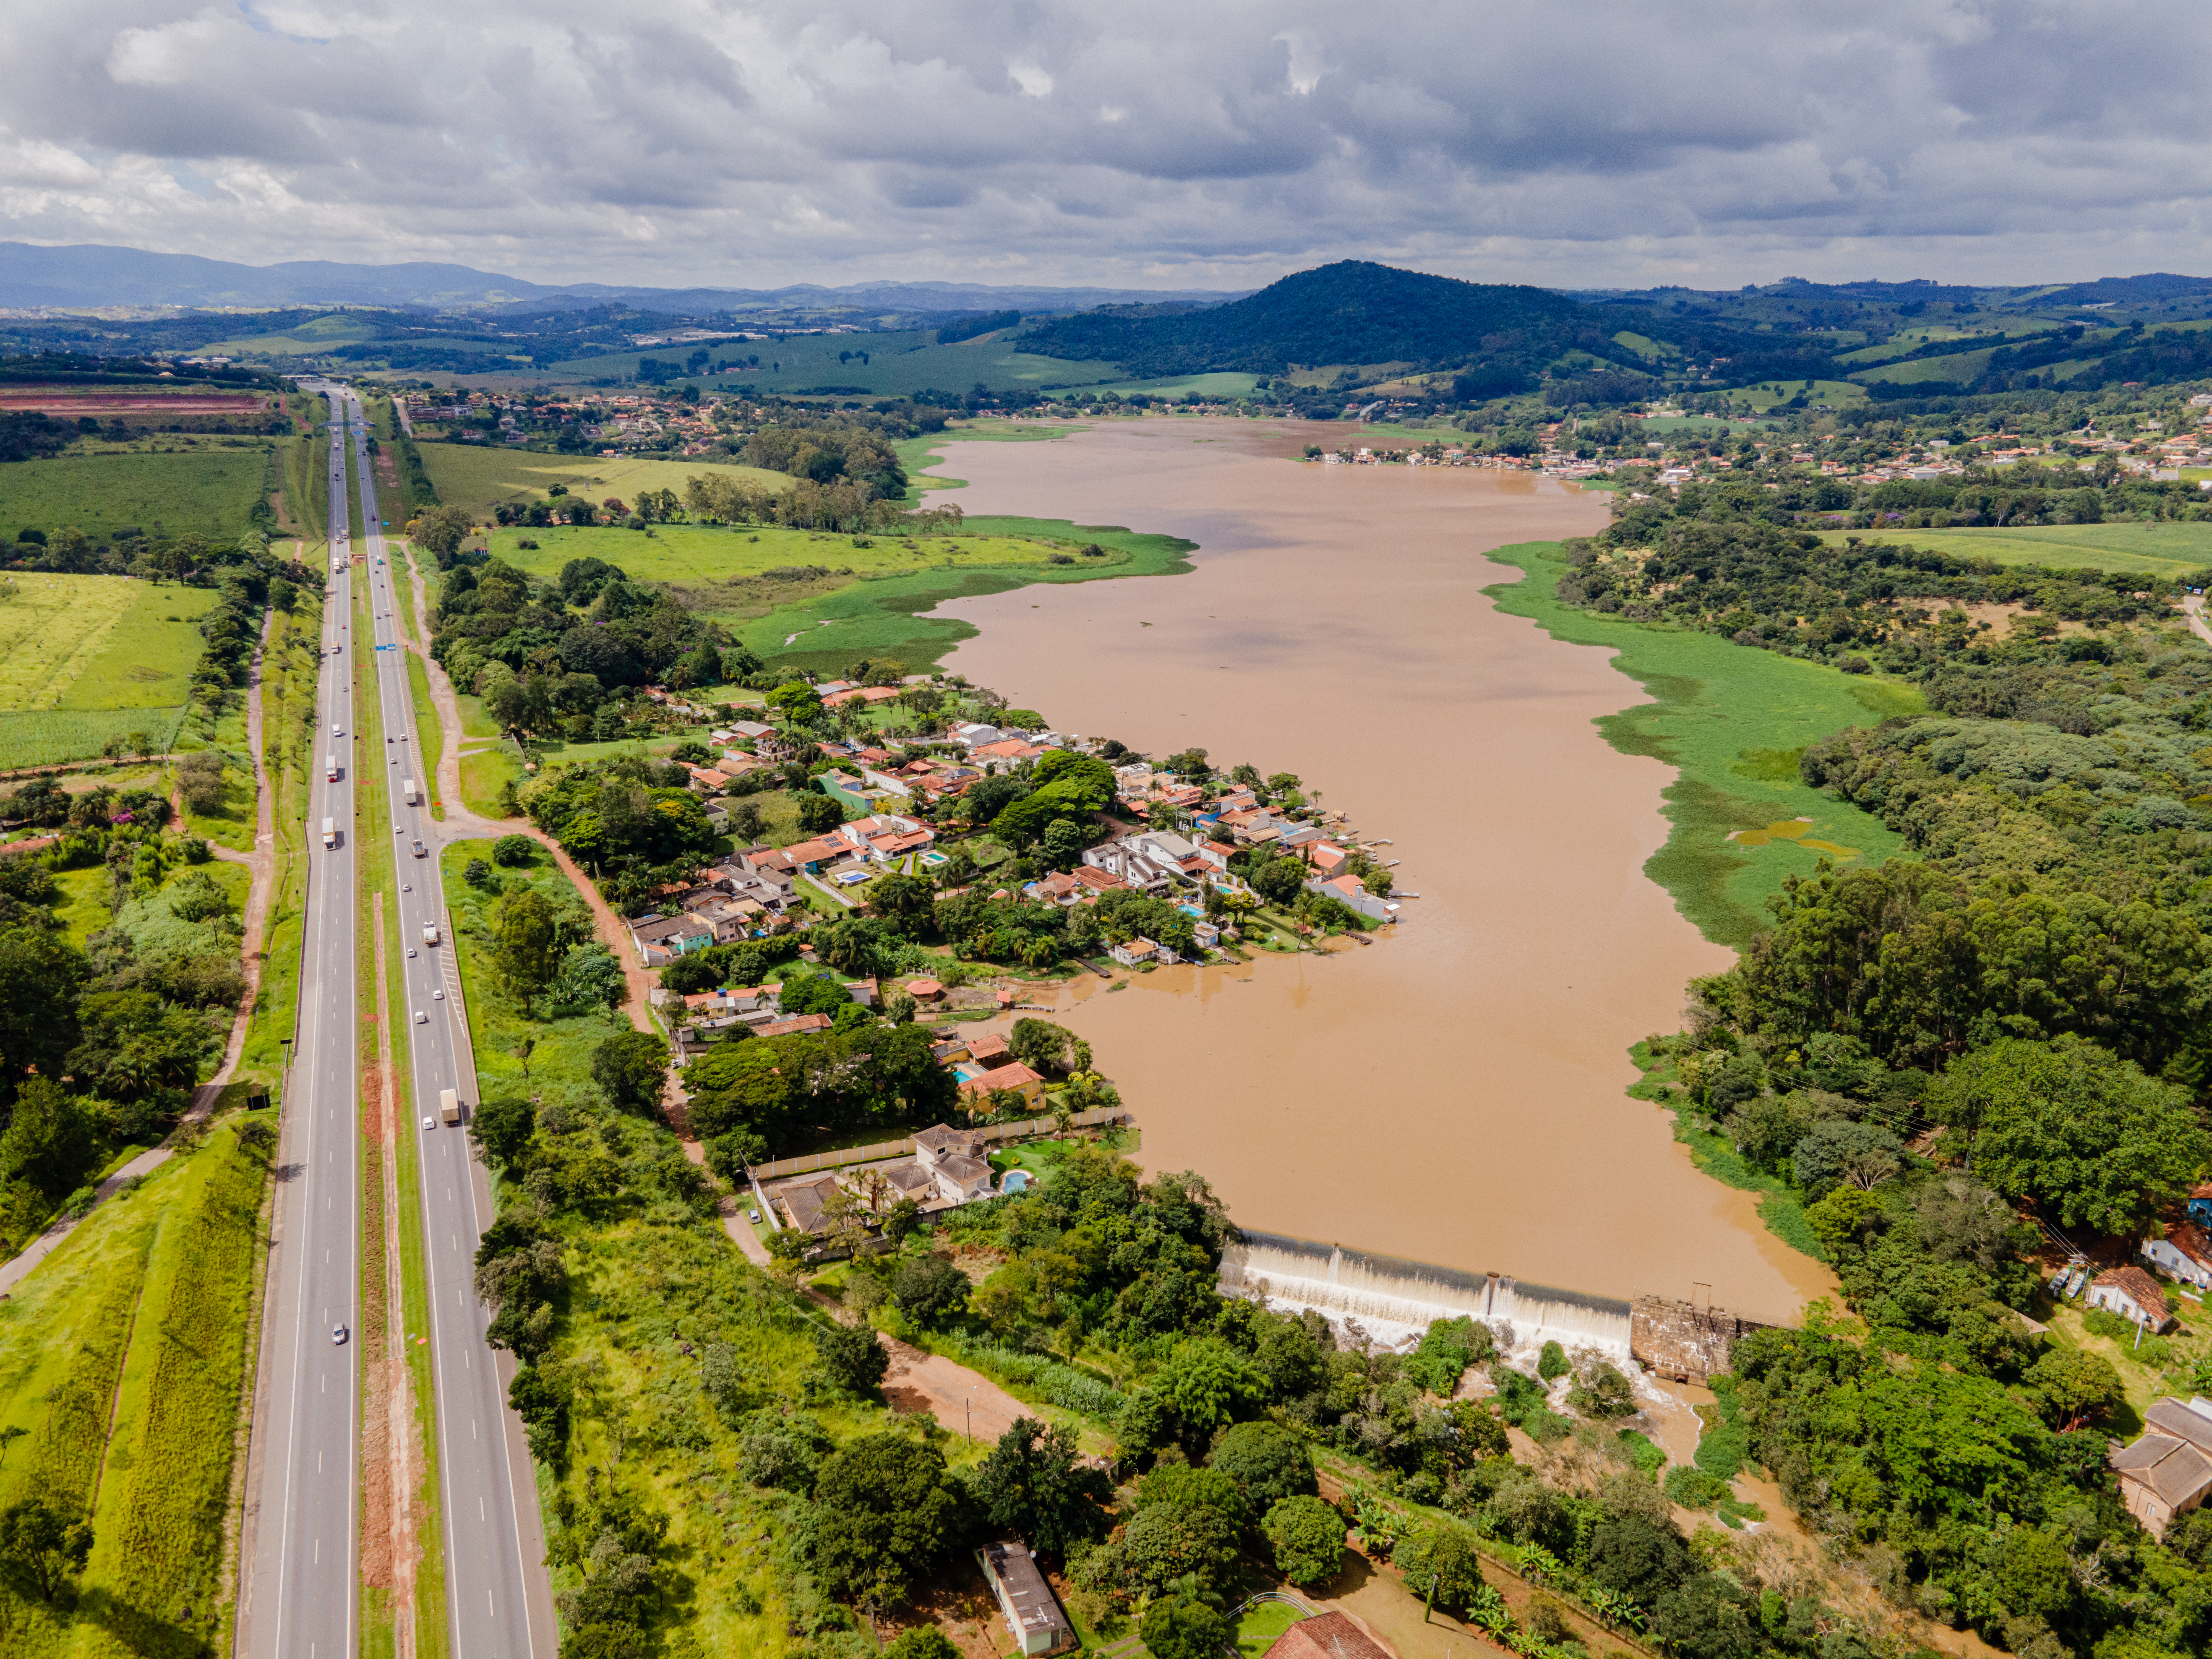 PUC-Campinas apresenta estudo que busca reduzir os impactos e garantir a sustentabilidade hídrica das regiões abastecidas pelos rios da Bacia PCJ - Foto: Bacias PCJ